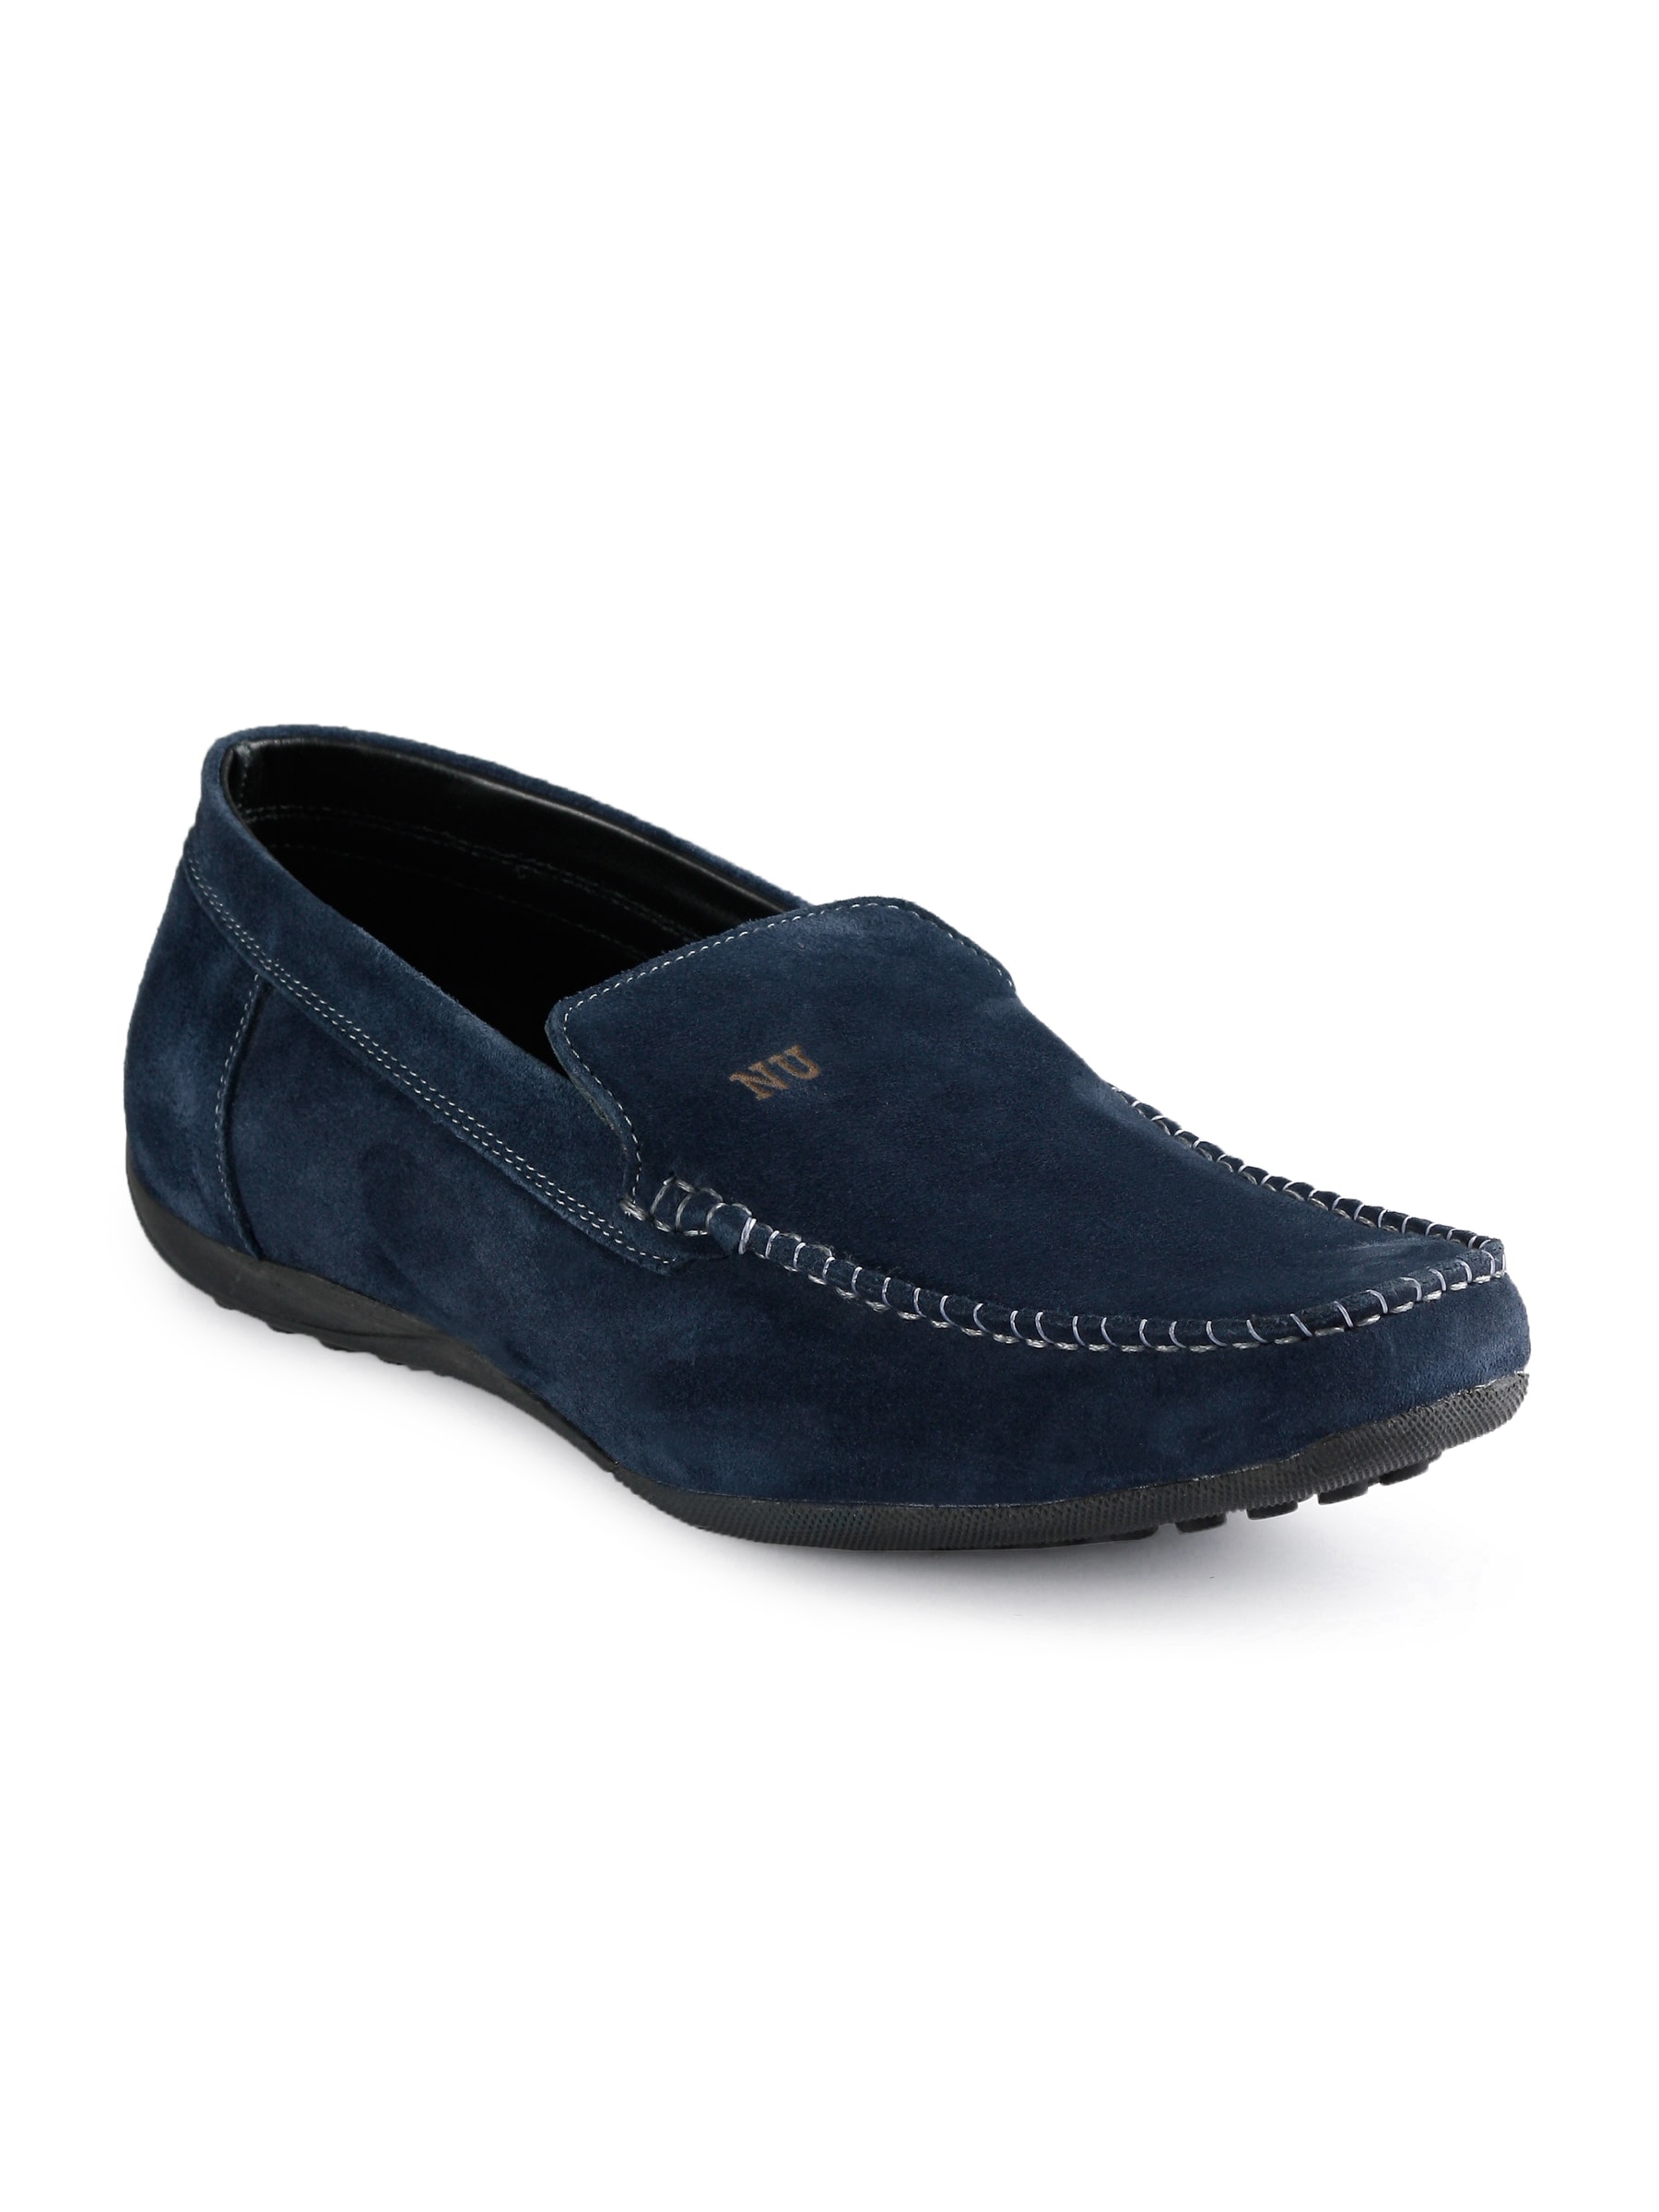 Numero Uno Men Suede Moccasin Navy Blue Casual Shoes